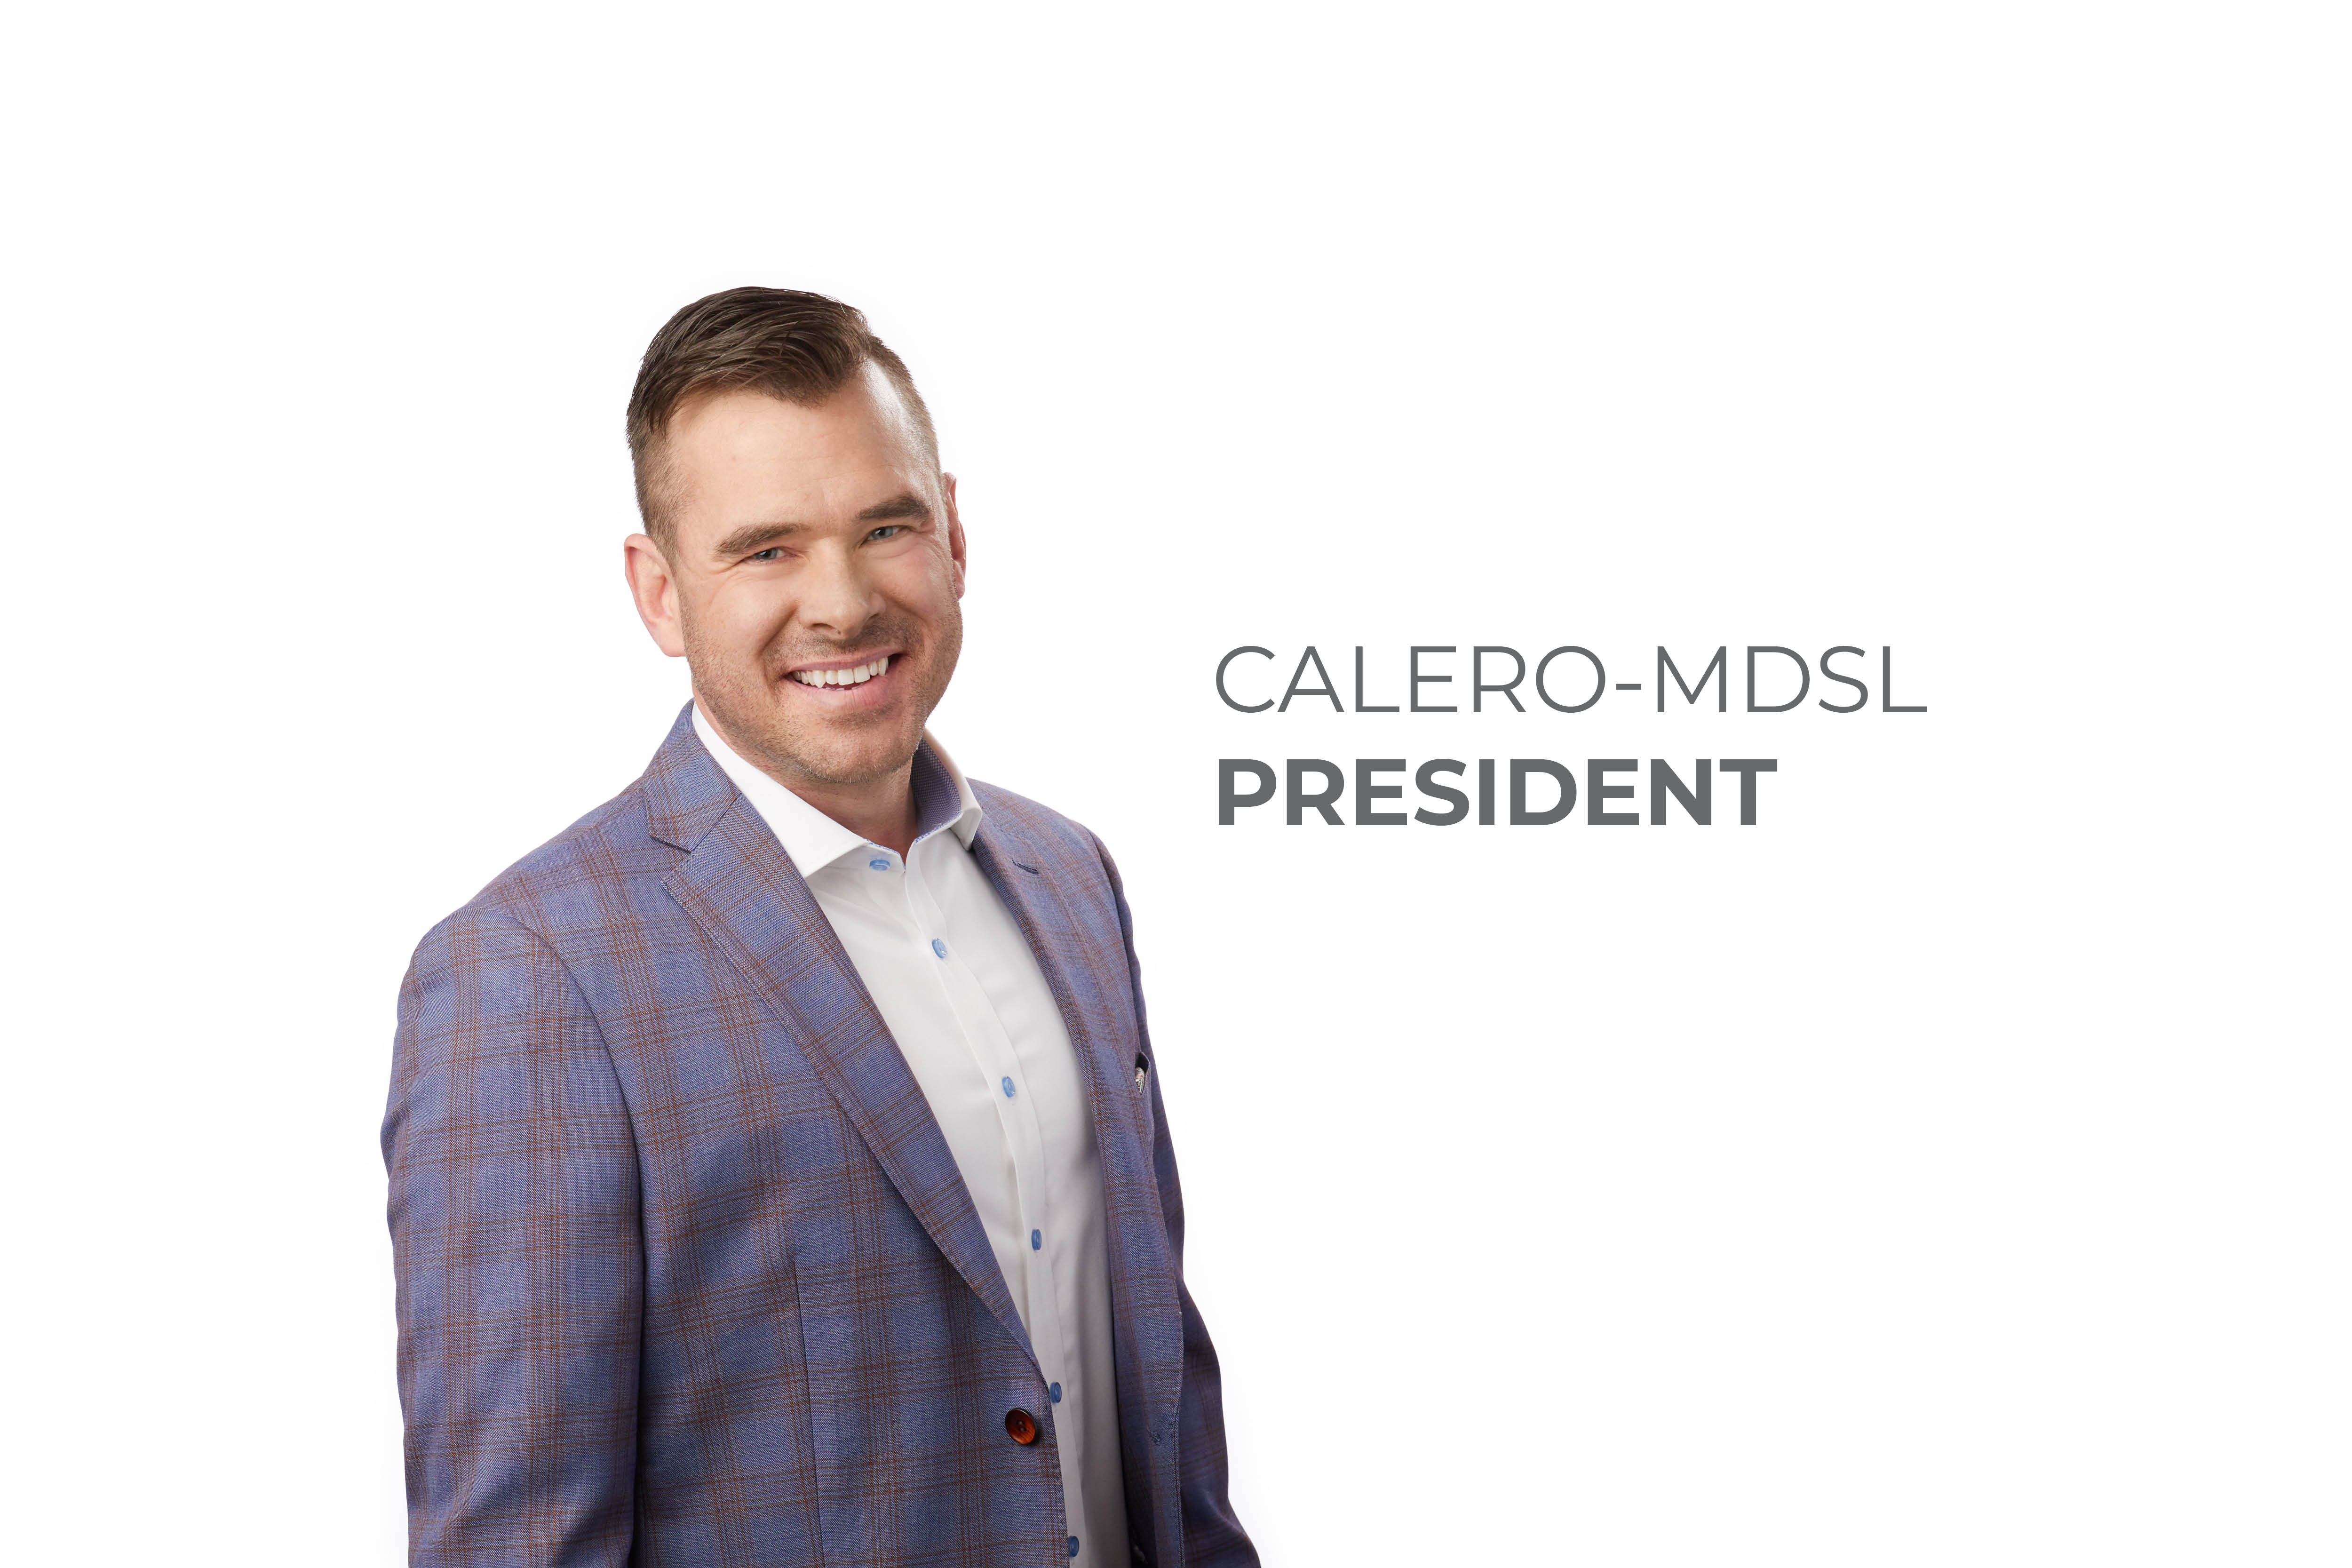 Calero-MDSL President